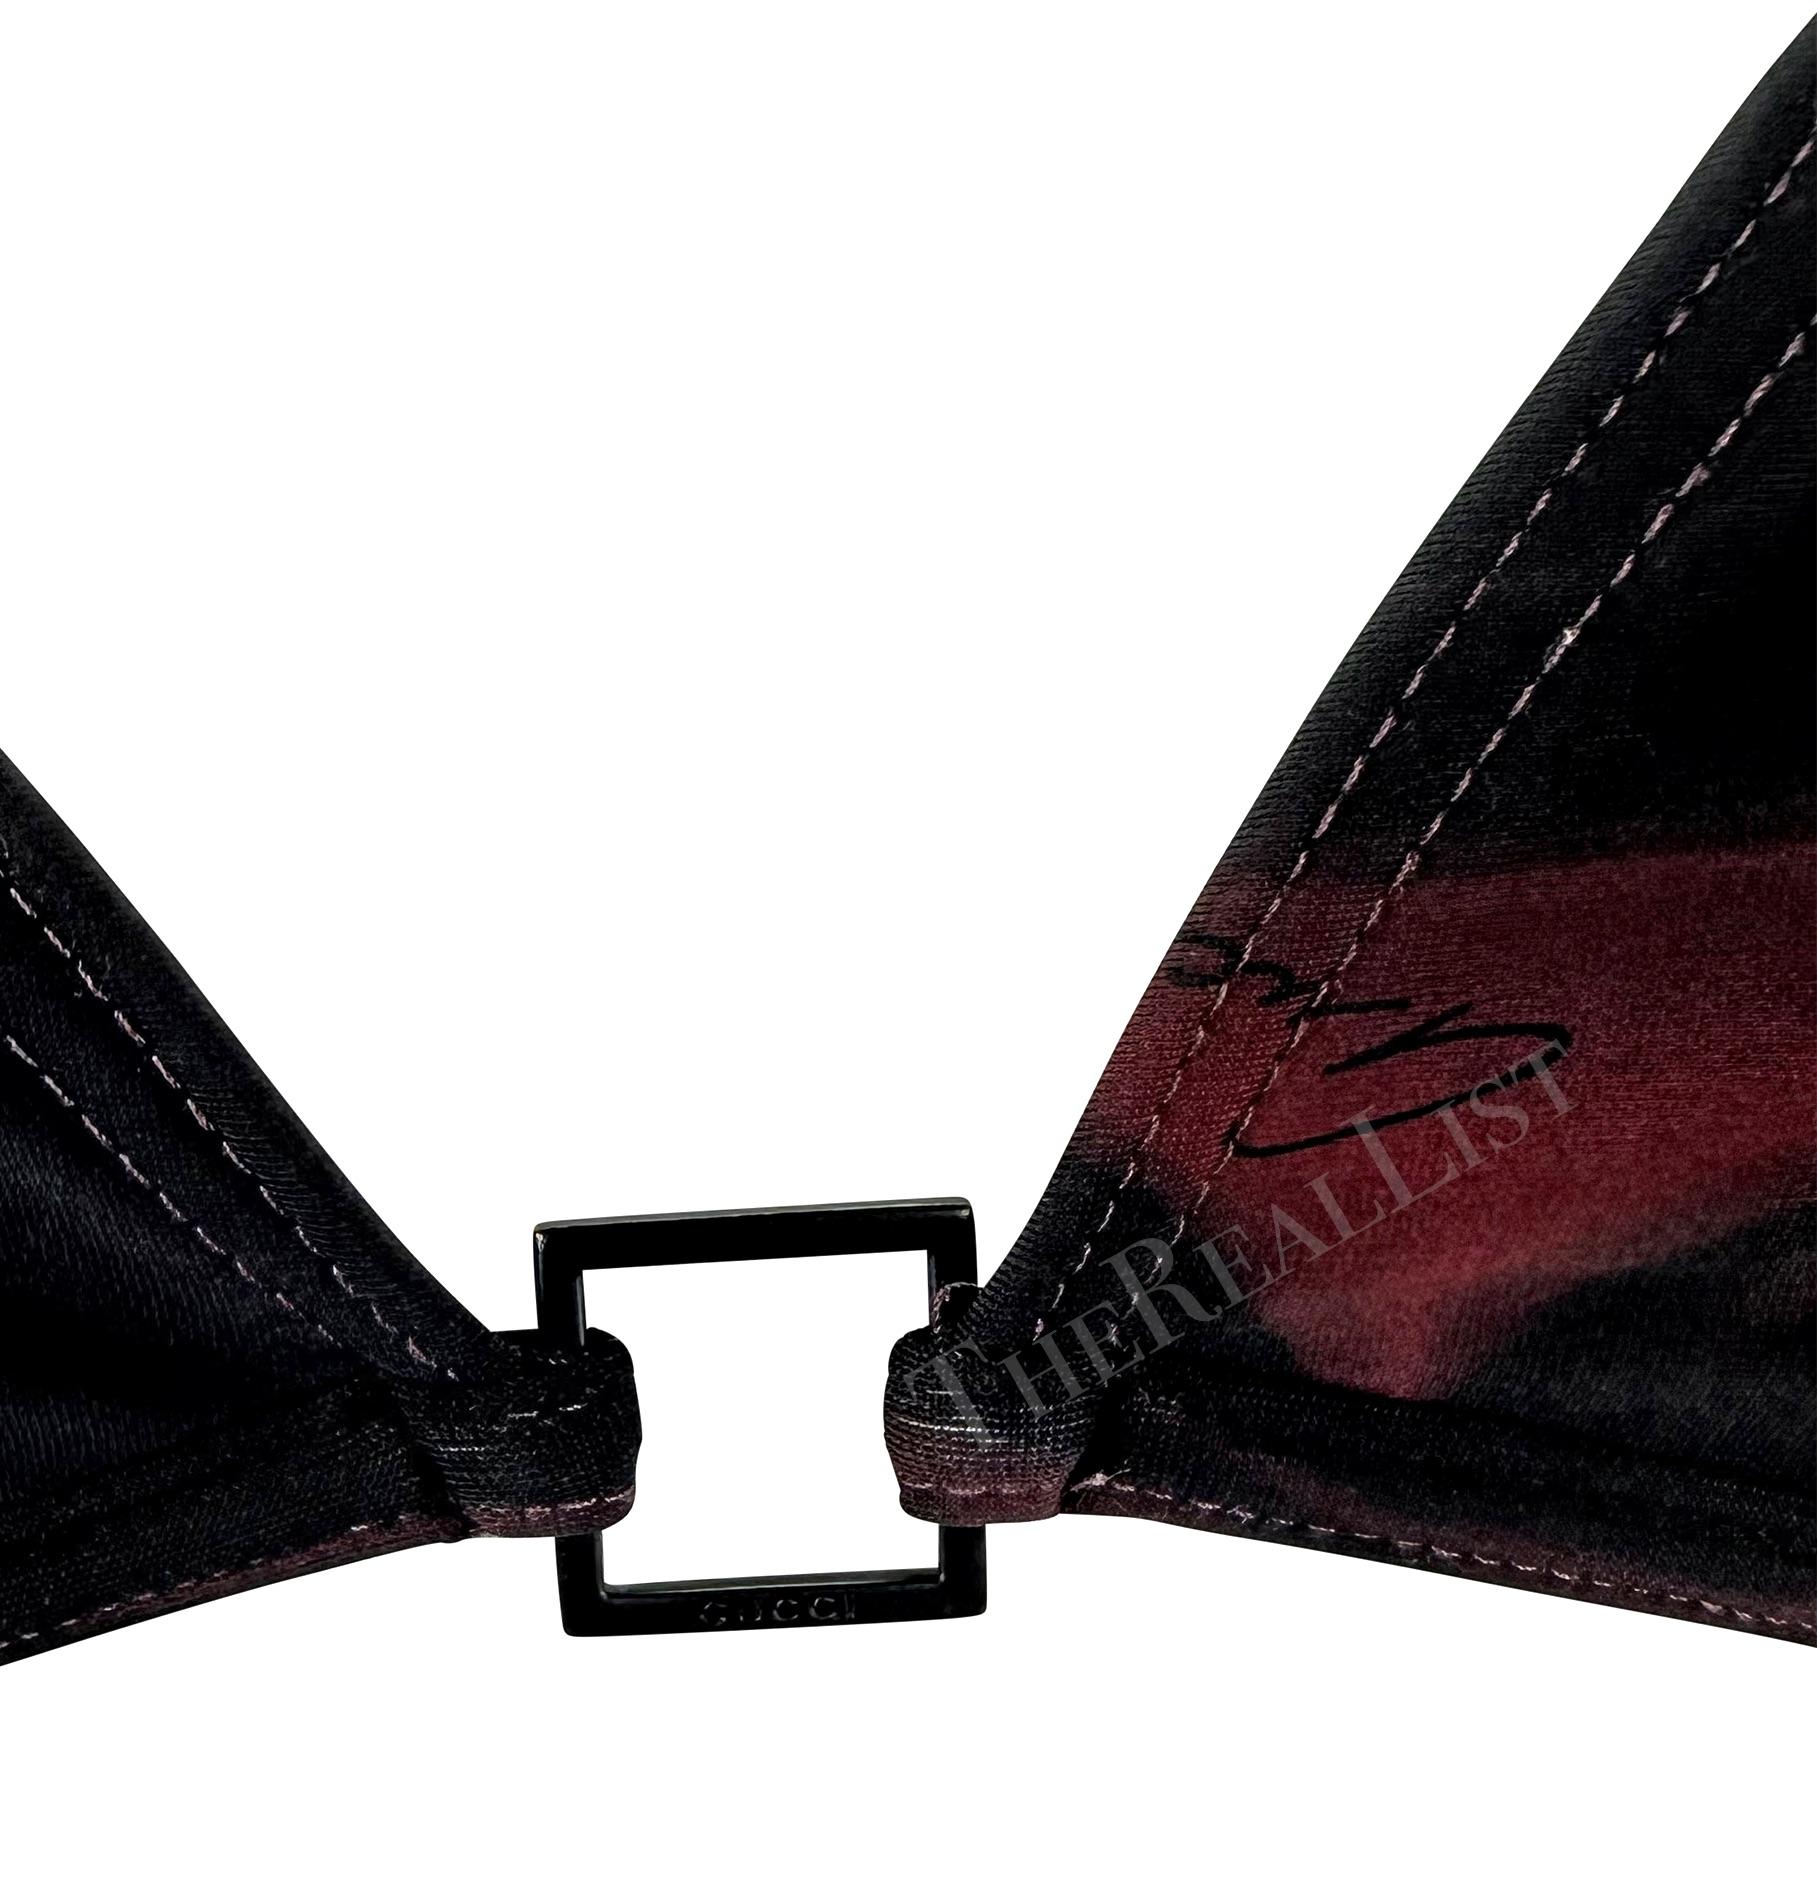 Nous vous présentons un bikini Gucci imprimé lave rouge foncé, conçu par Tom Ford. Issu de la collection printemps/été 2001, ce maillot de bain deux pièces se compose d'un haut de forme triangulaire et d'un bas à fines ficelles. Le haut est doté